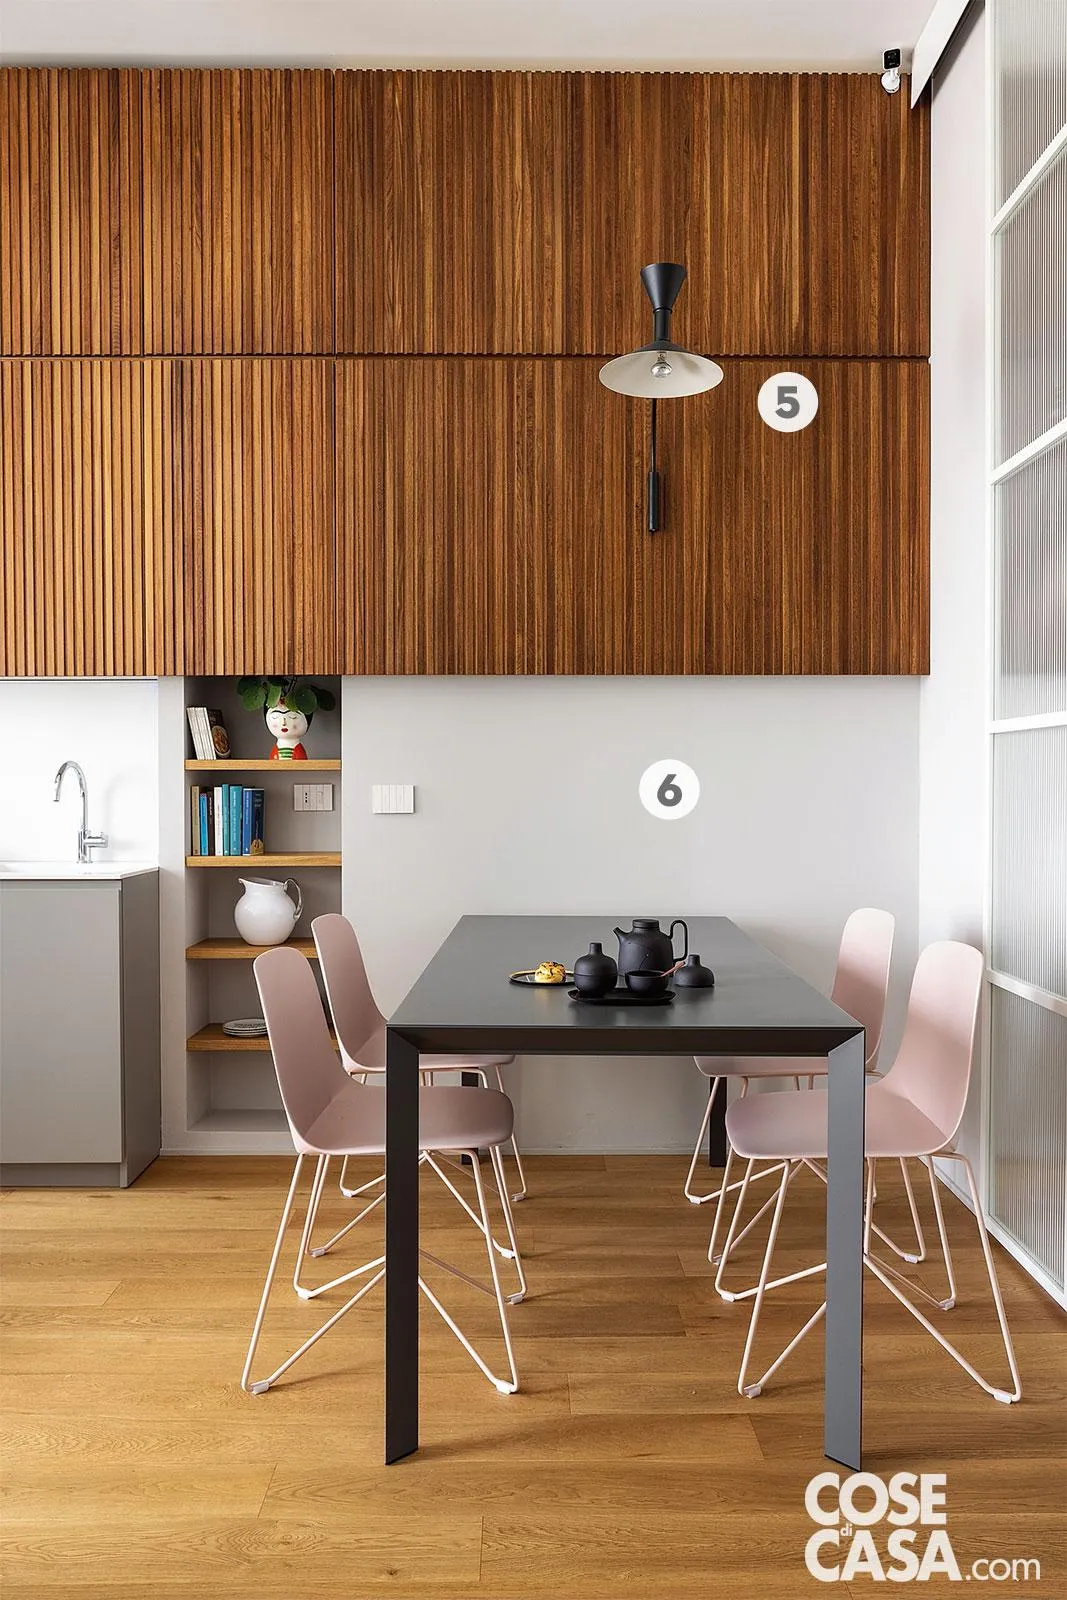 Appartamento classico, soluzioni moderne. Come la libreria passante che  divide soggiorno e cucina - Cose di Casa